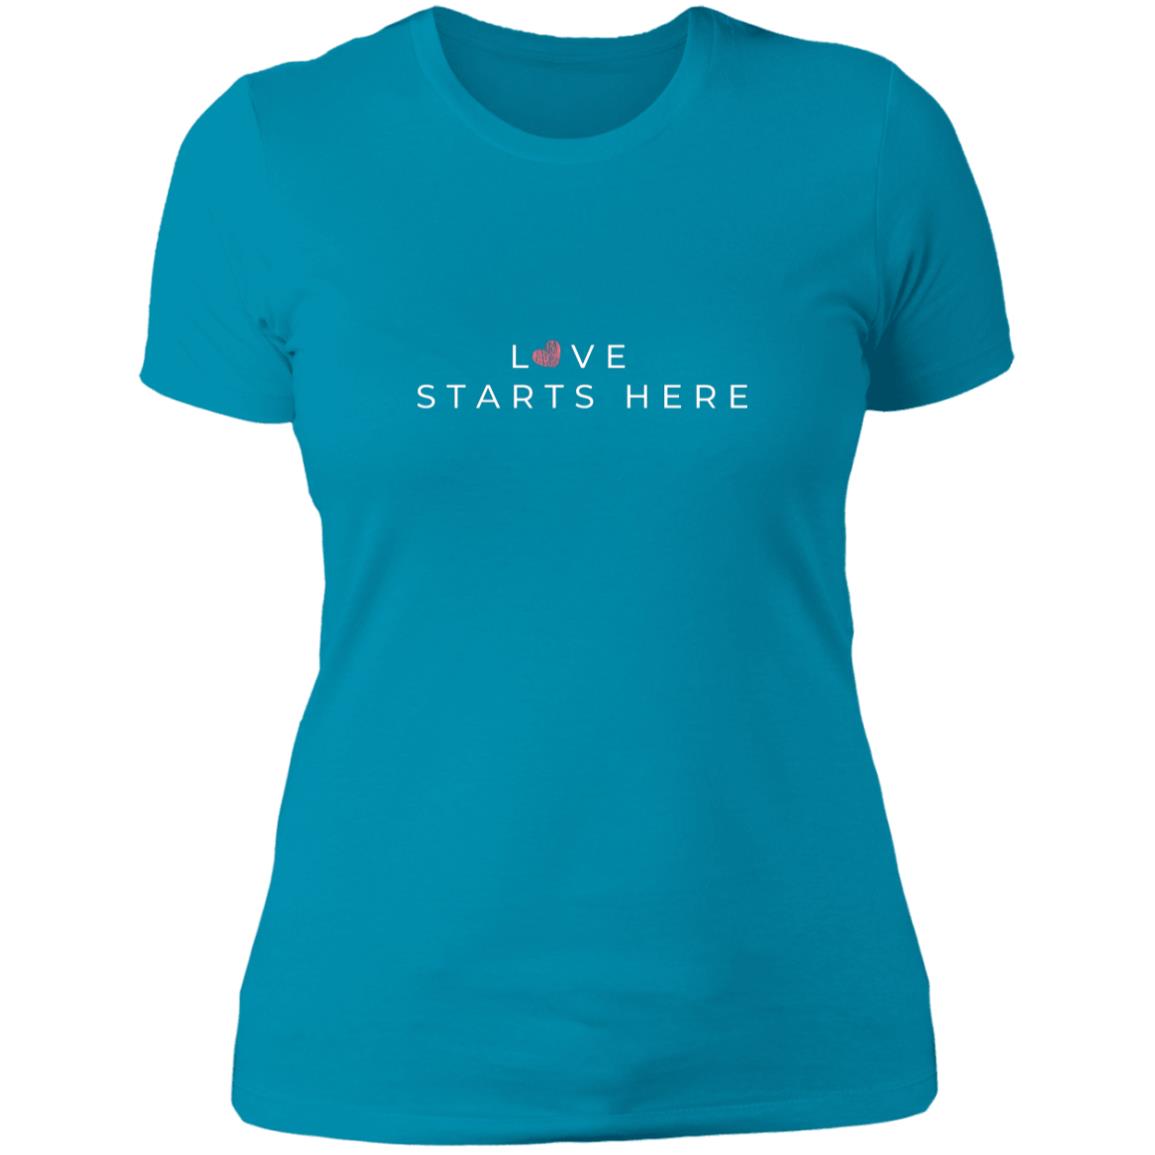 Love Starts Here - women's